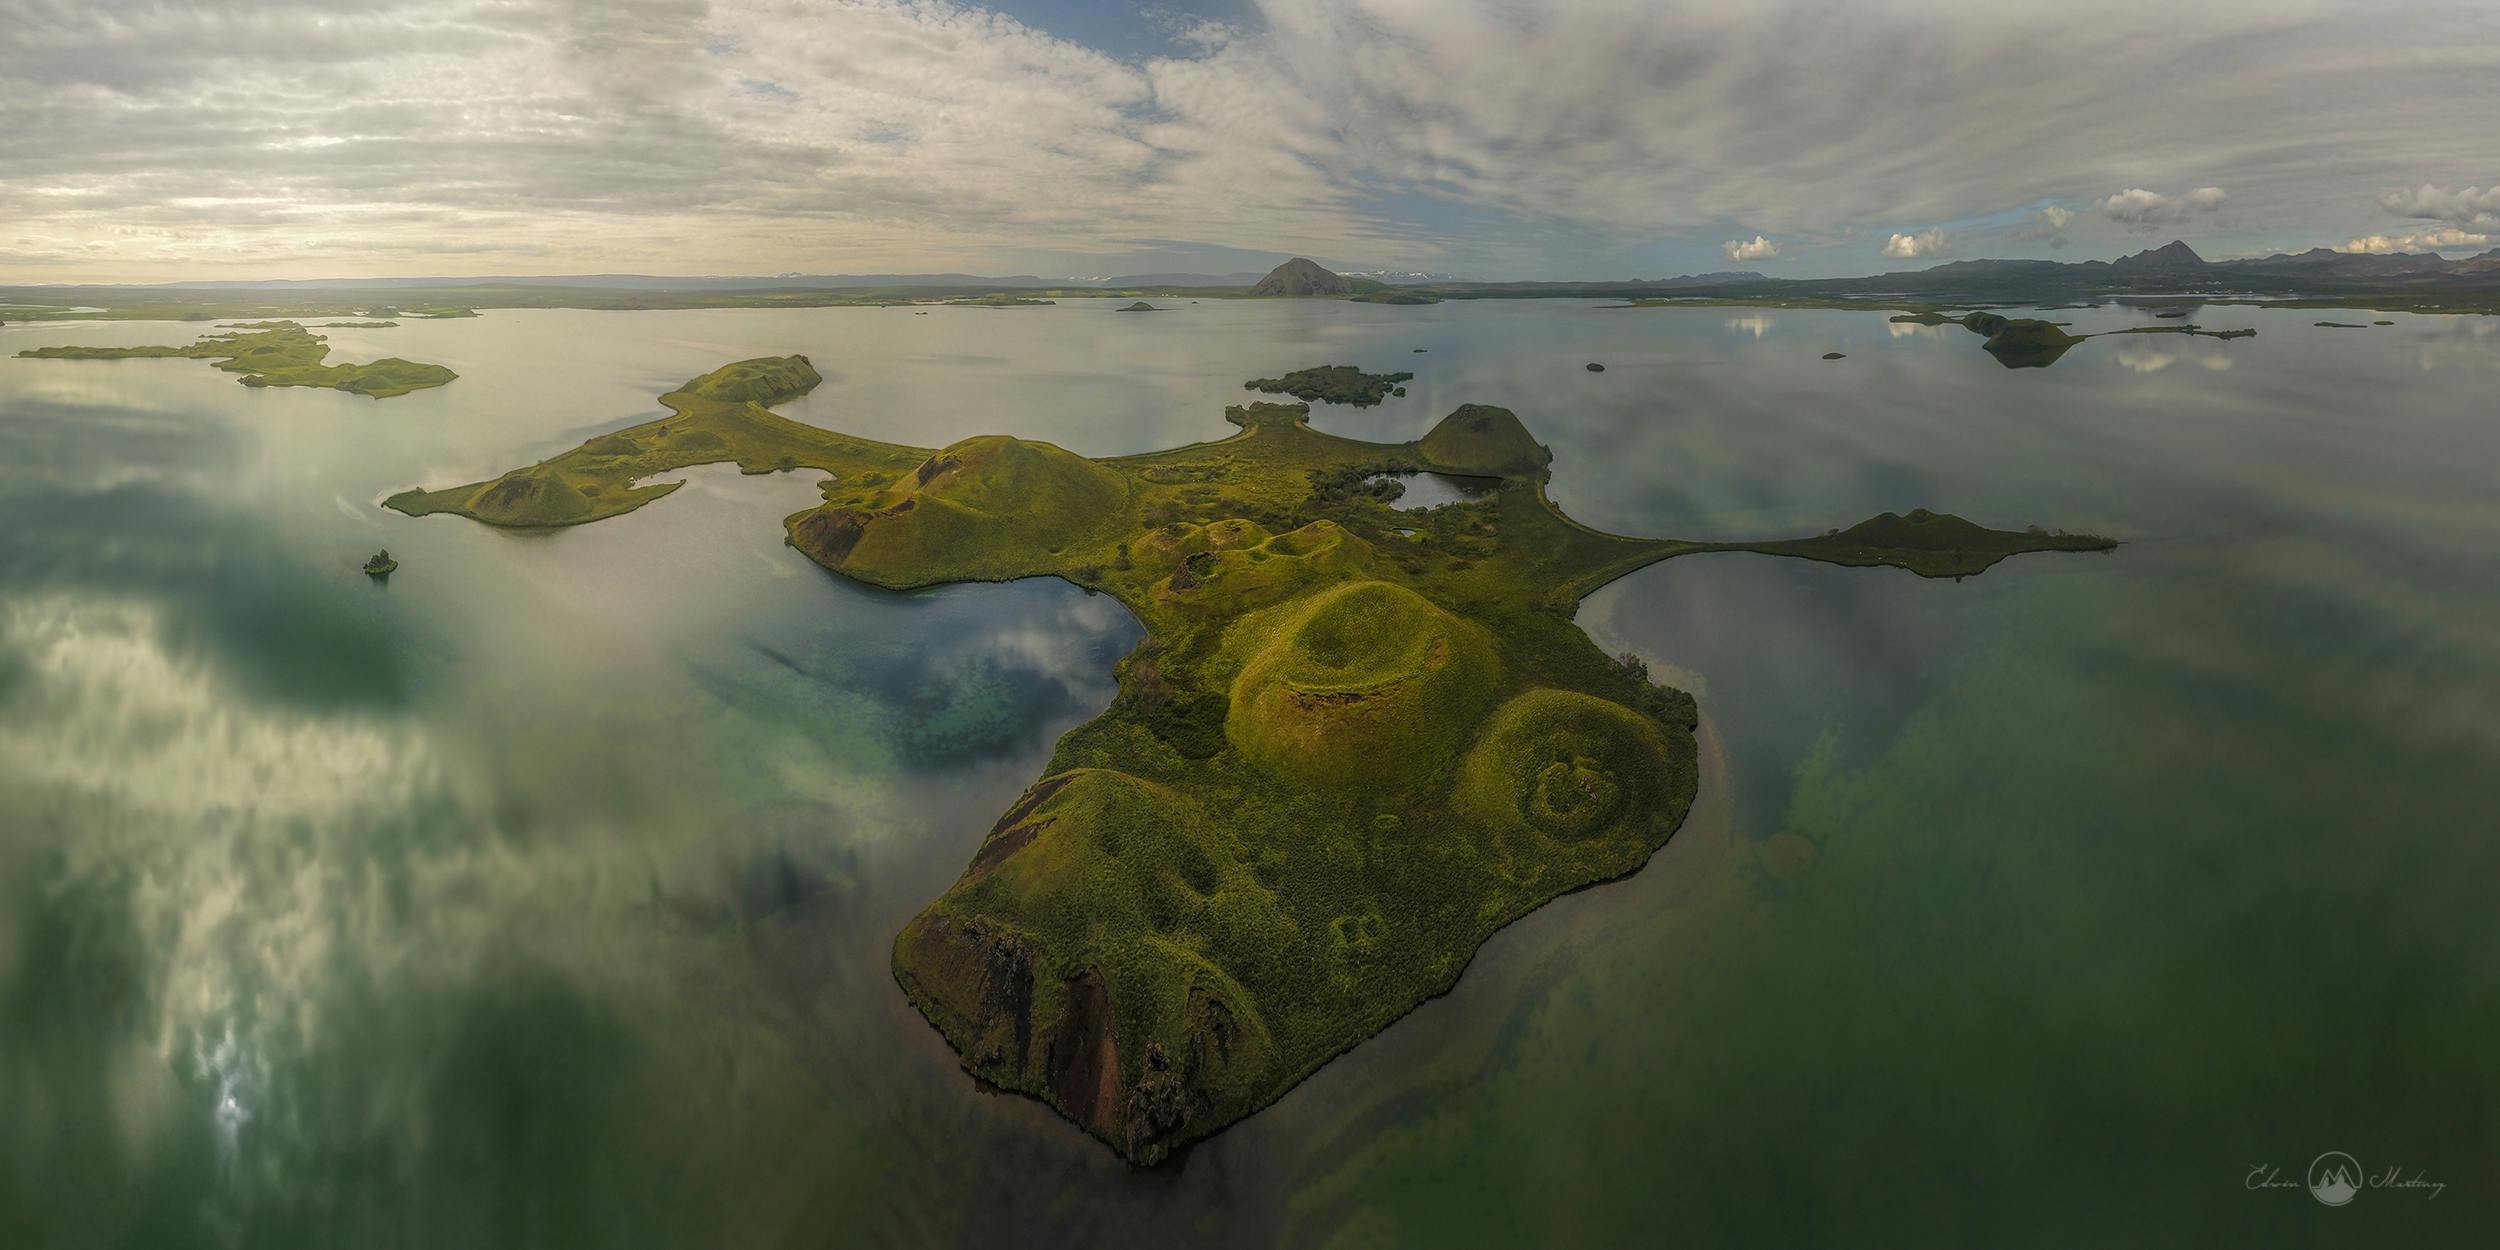 La regione più remota di tutta l'Islanda è quella degli altopiani.